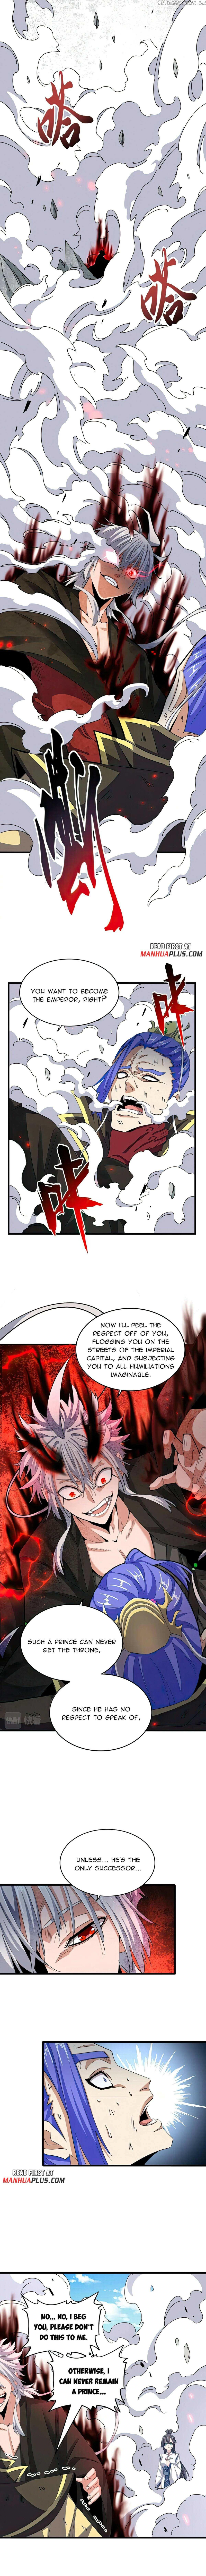 Magic Emperor Chapter 399 page 7 - Mangakakalot